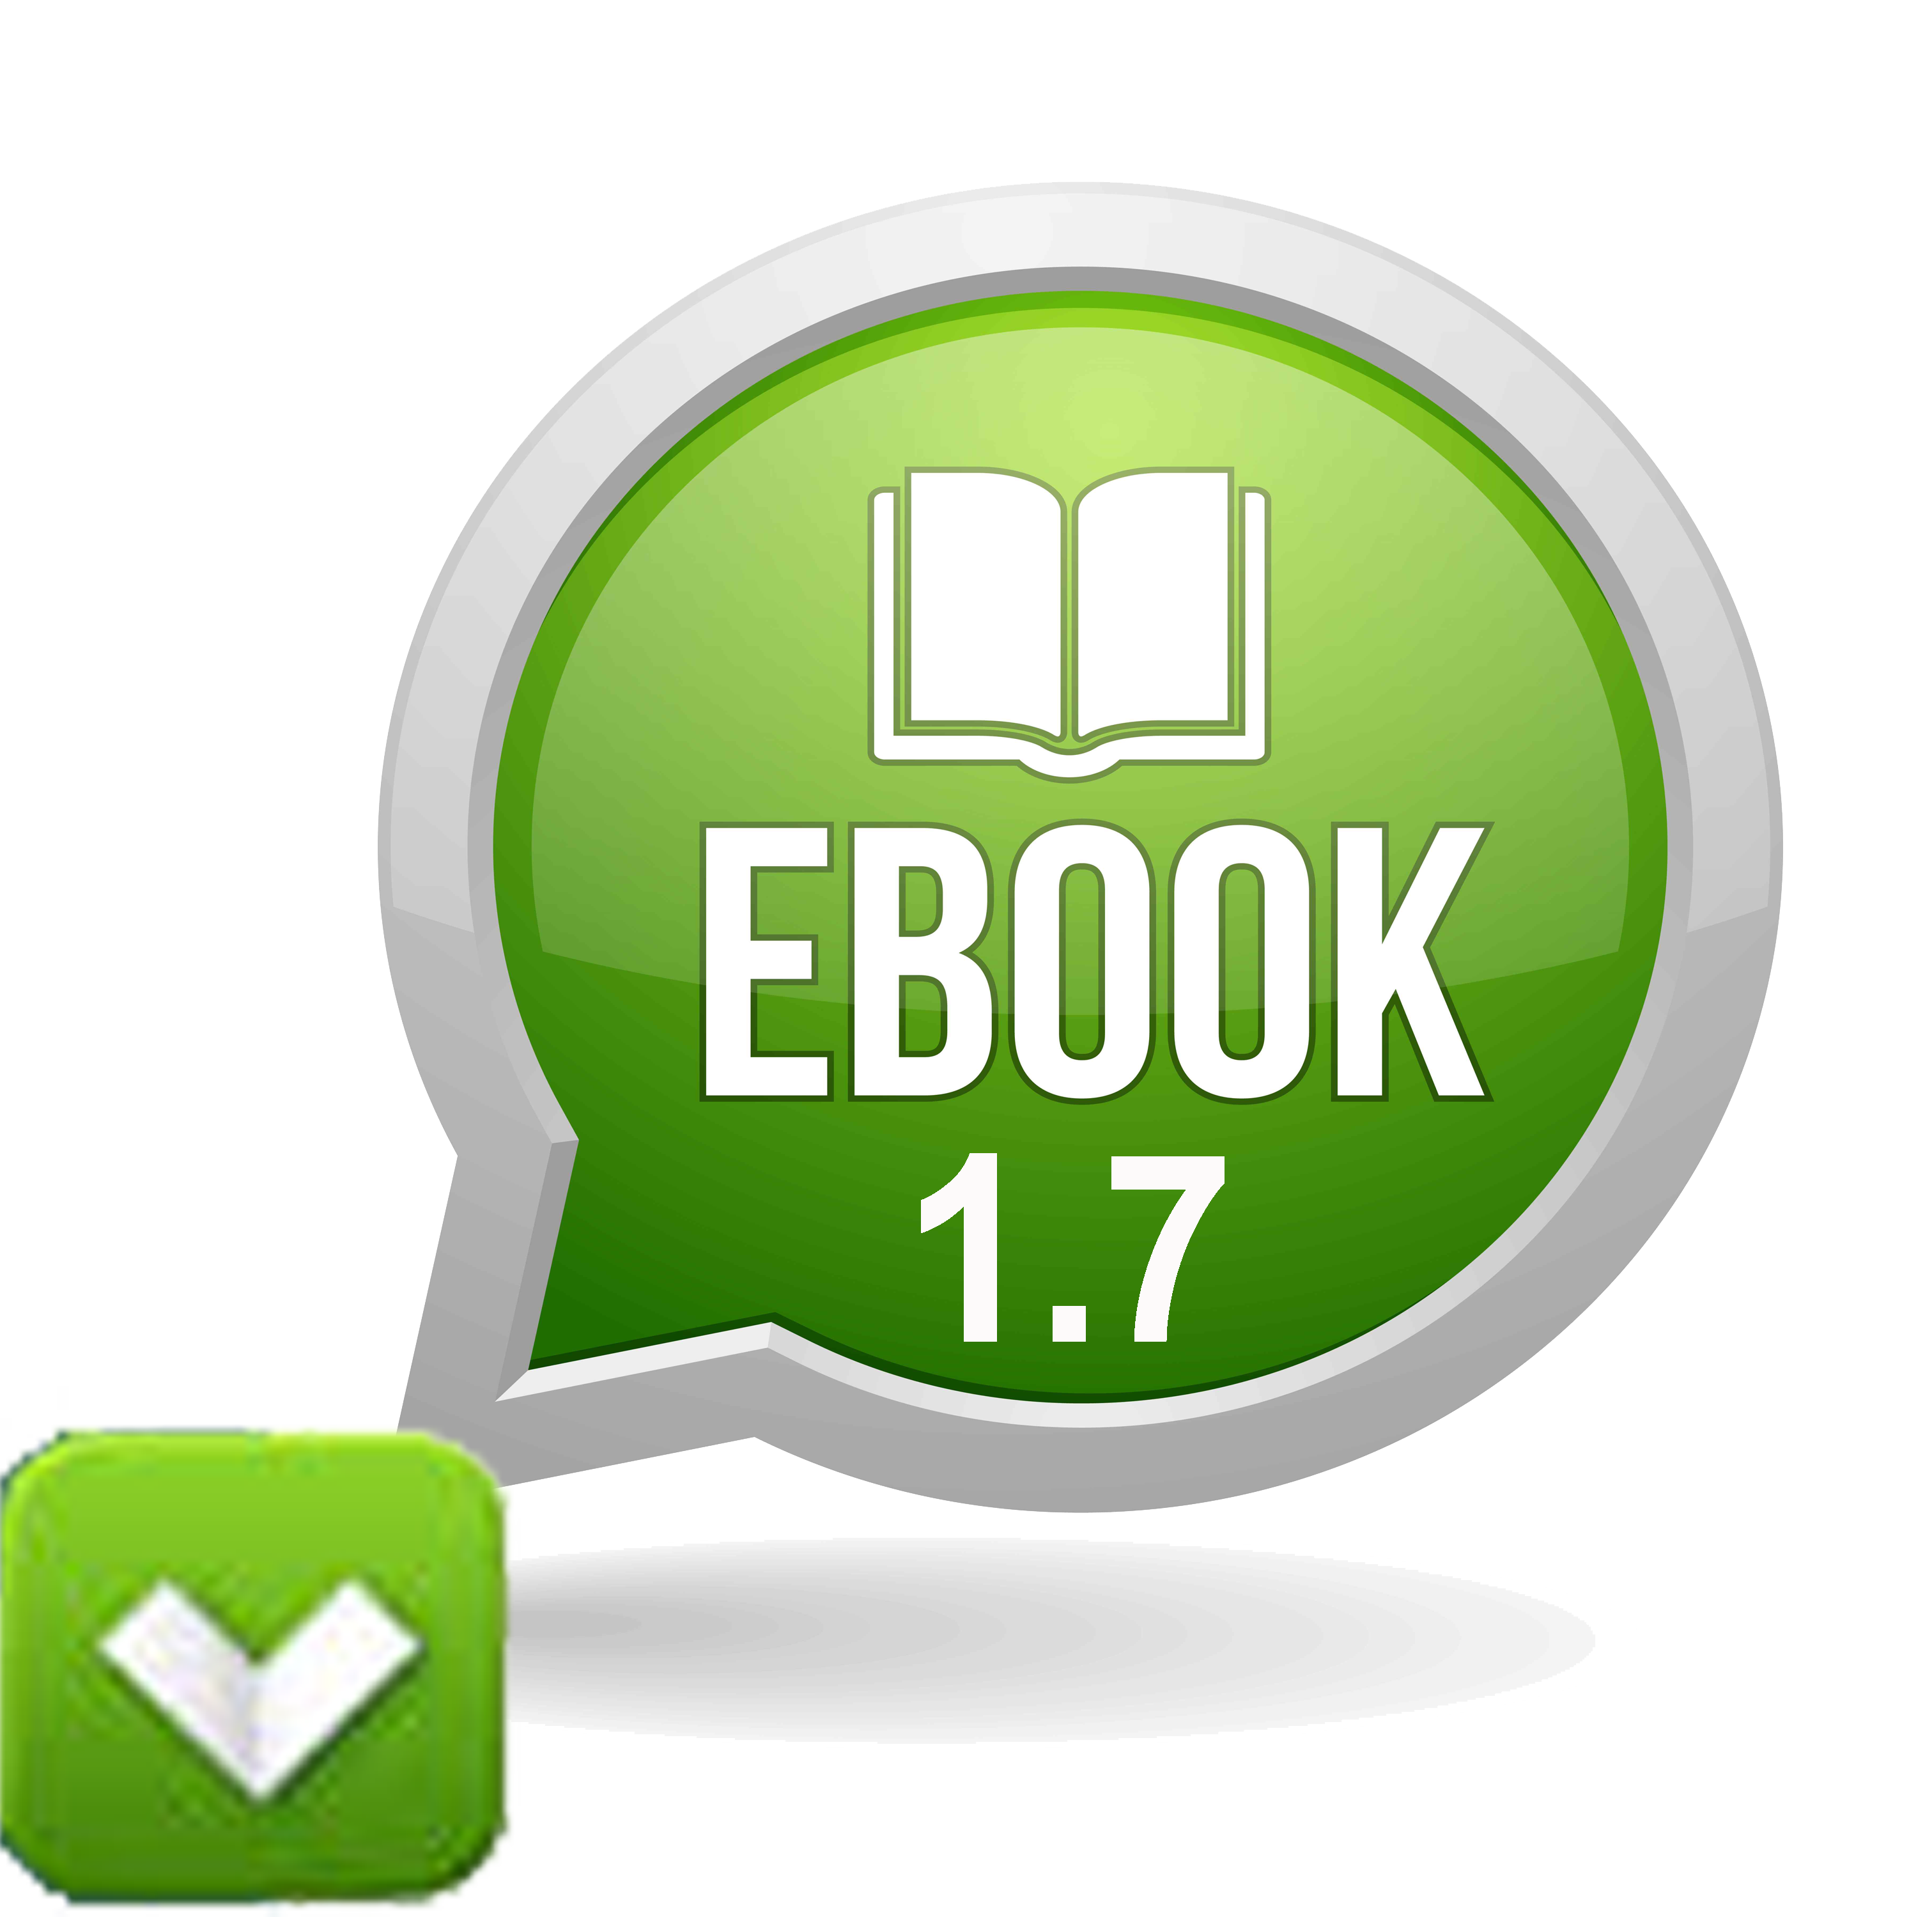 tai%20ebook Ebook 1.7 - VACPA | Công ty TNHH Hãng Kiểm toán và Định giá ATC(ATC Firm)